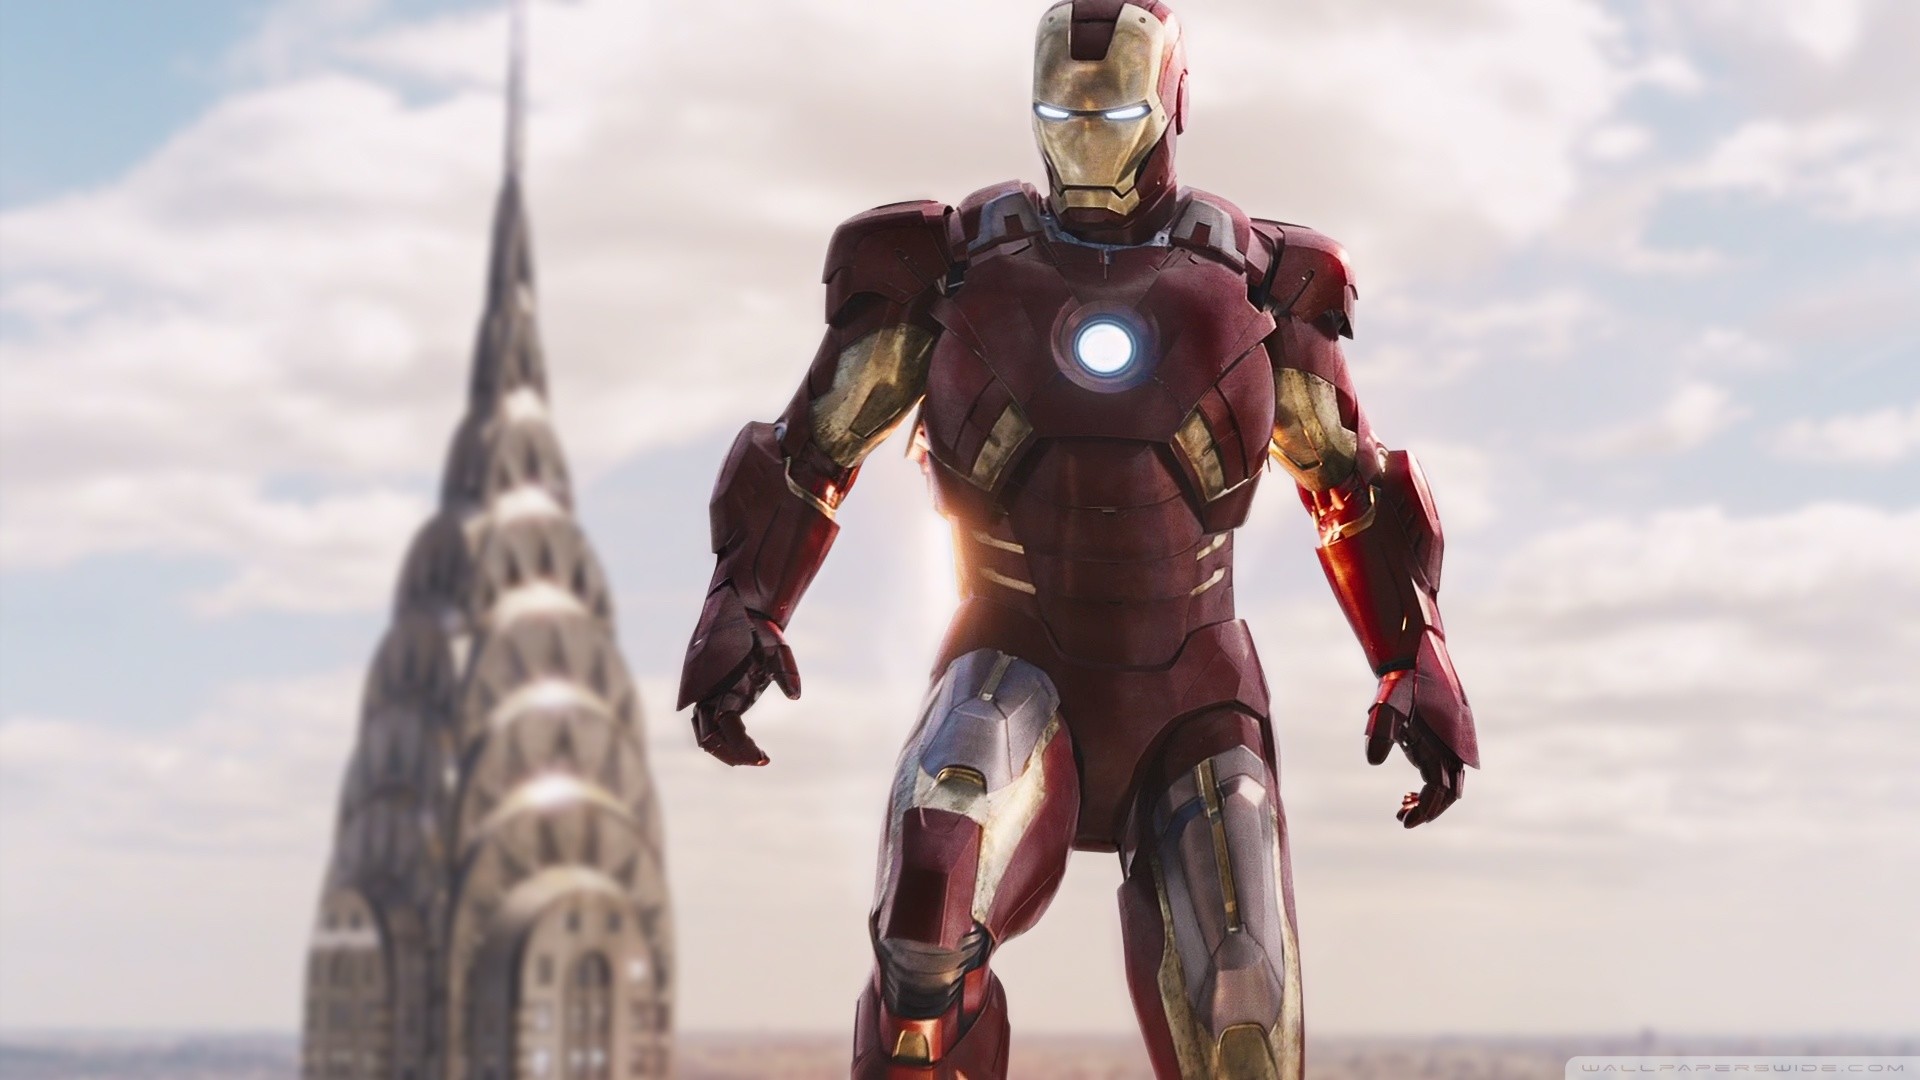 Ironman MARK07 Avengers HD Wide Wallpaper for Widescreen